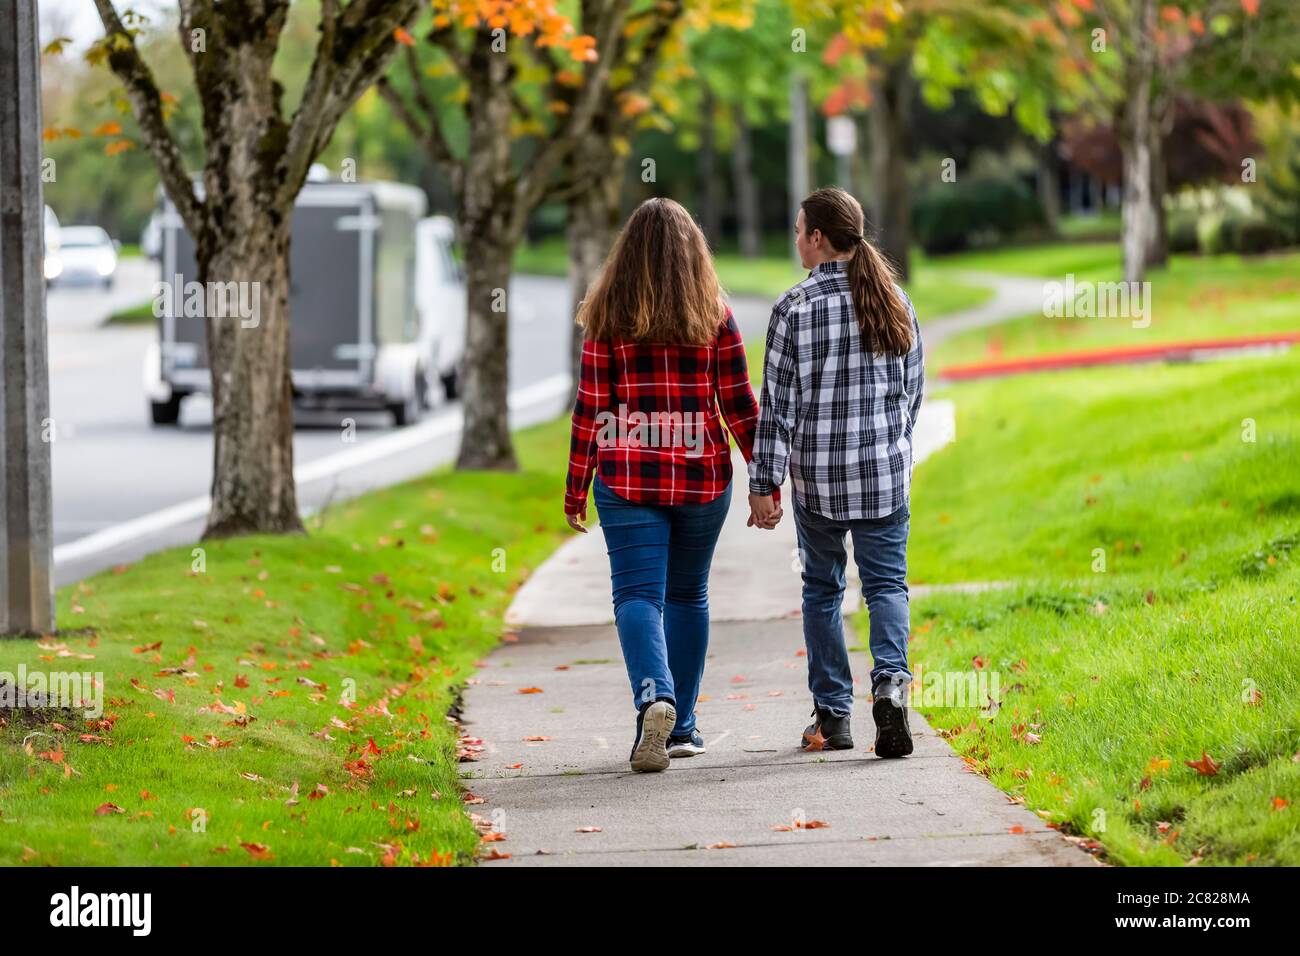 Un jeune garçon et une jeune fille marchant sur un trottoir tenant les mains; Bothell, Washington, États-Unis d'Amérique Banque D'Images